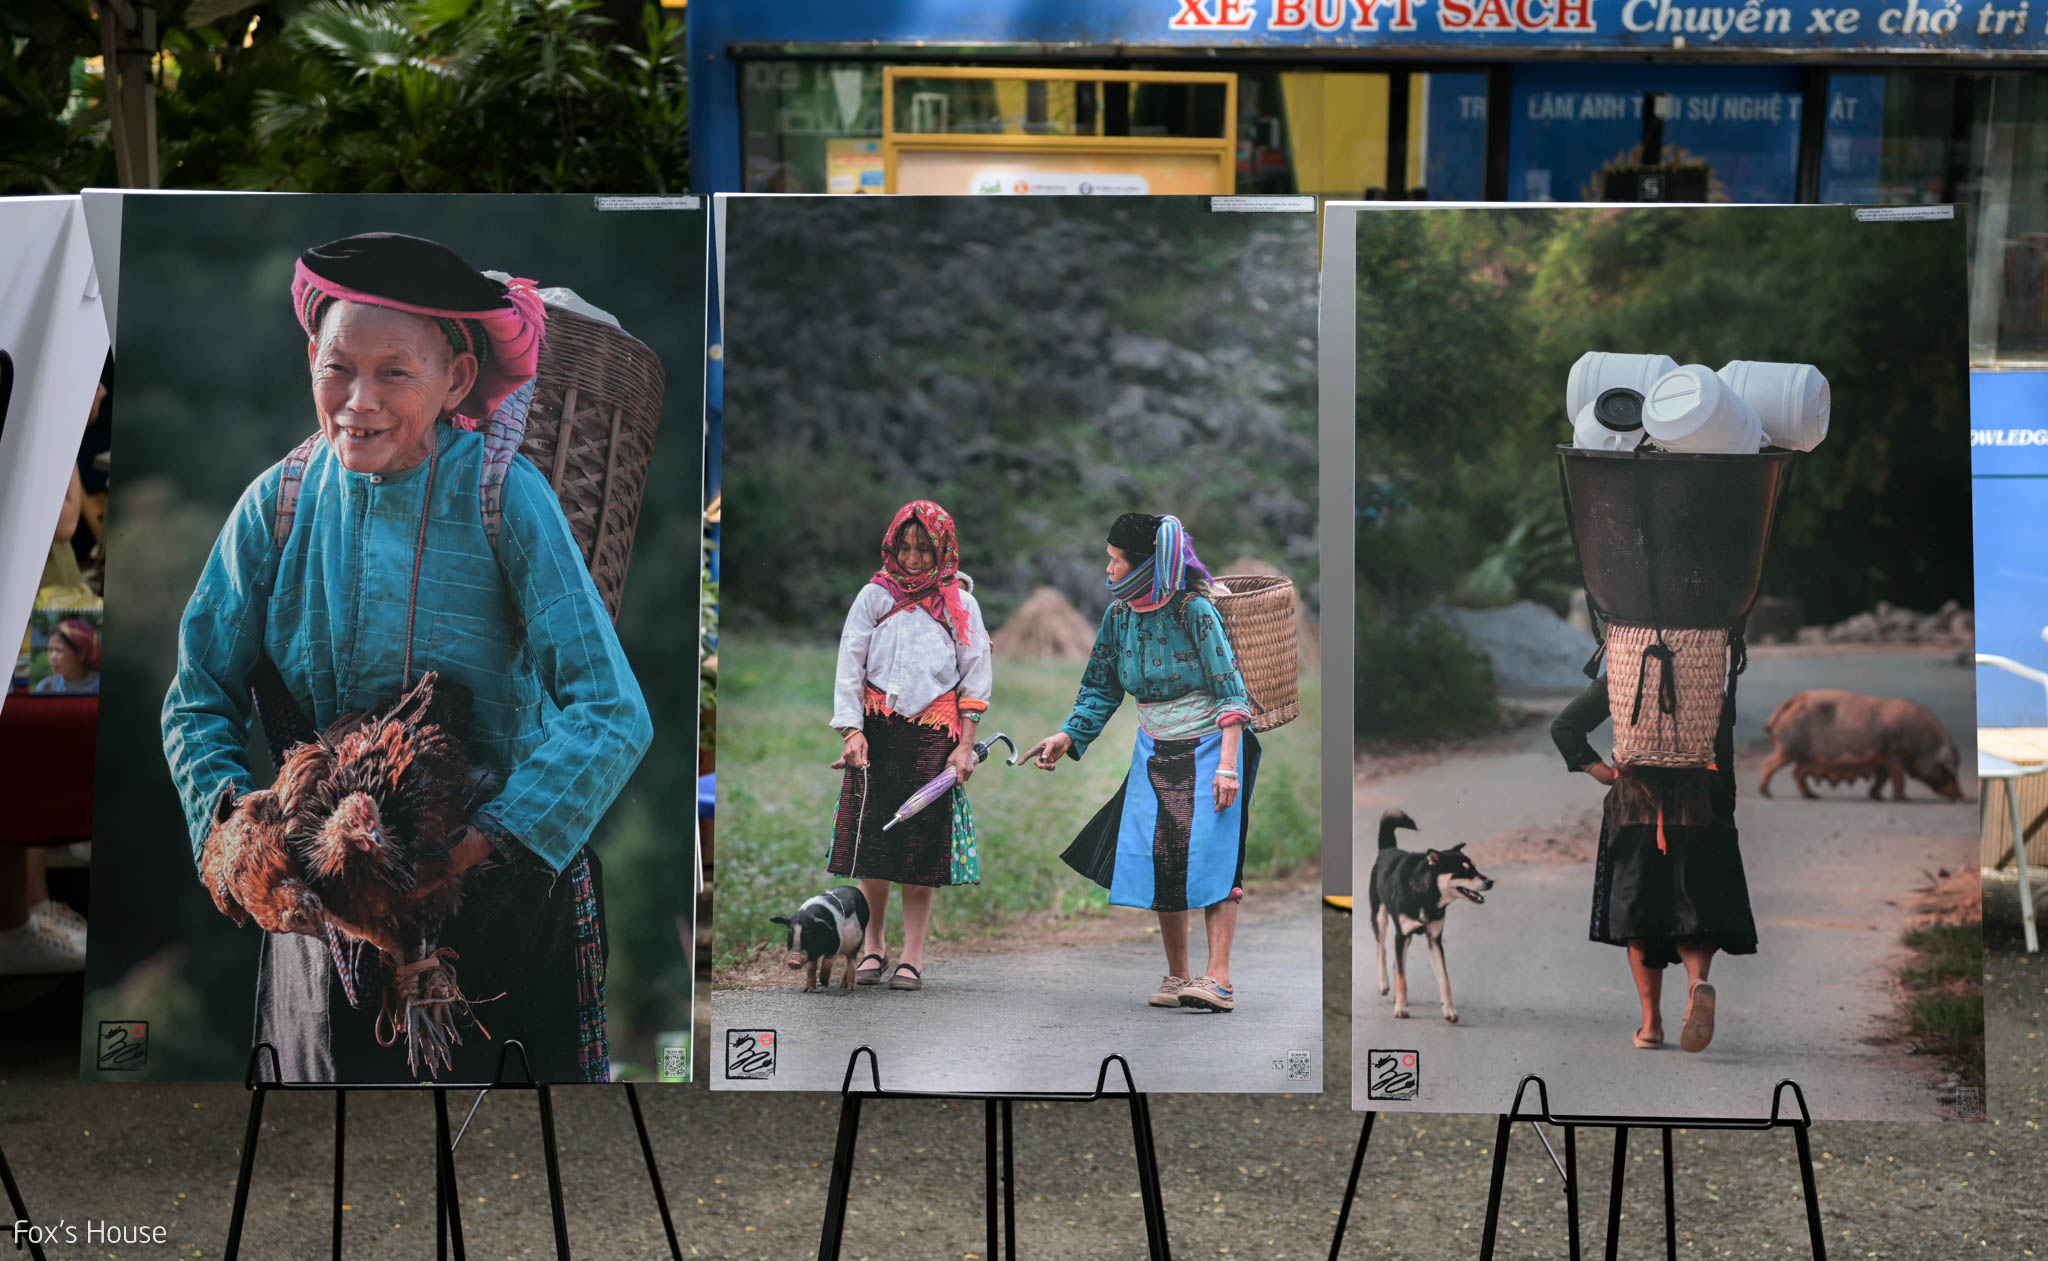 Một vòng triển lãm "Chợ trên Đá" của nhiếp ảnh gia Trần Cao Bảo Long ở Đường Sách TPHCM